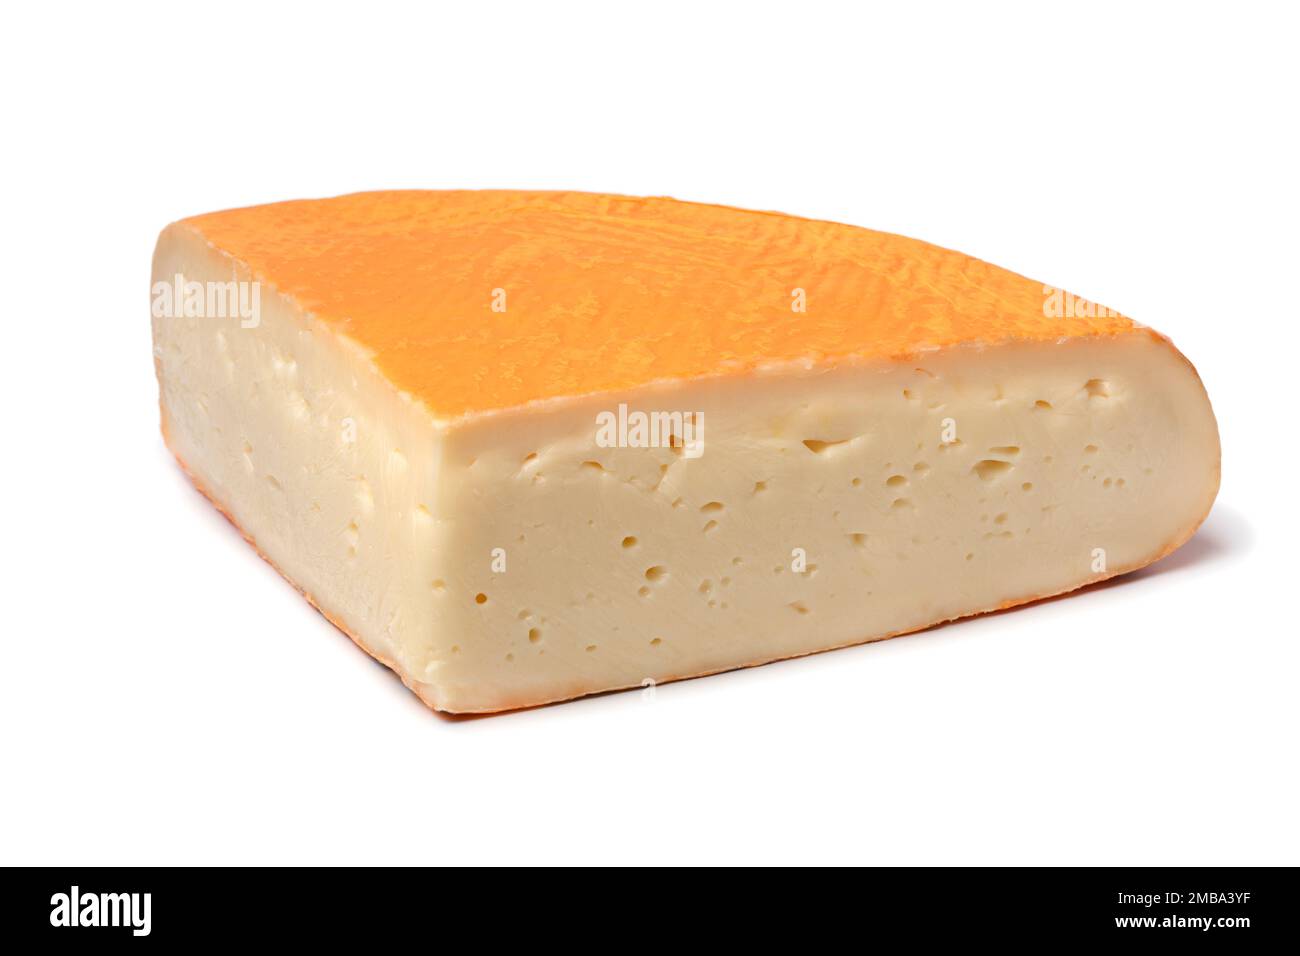 Morceau de fromage Chaux frais gros plan isolé sur fond blanc Banque D'Images